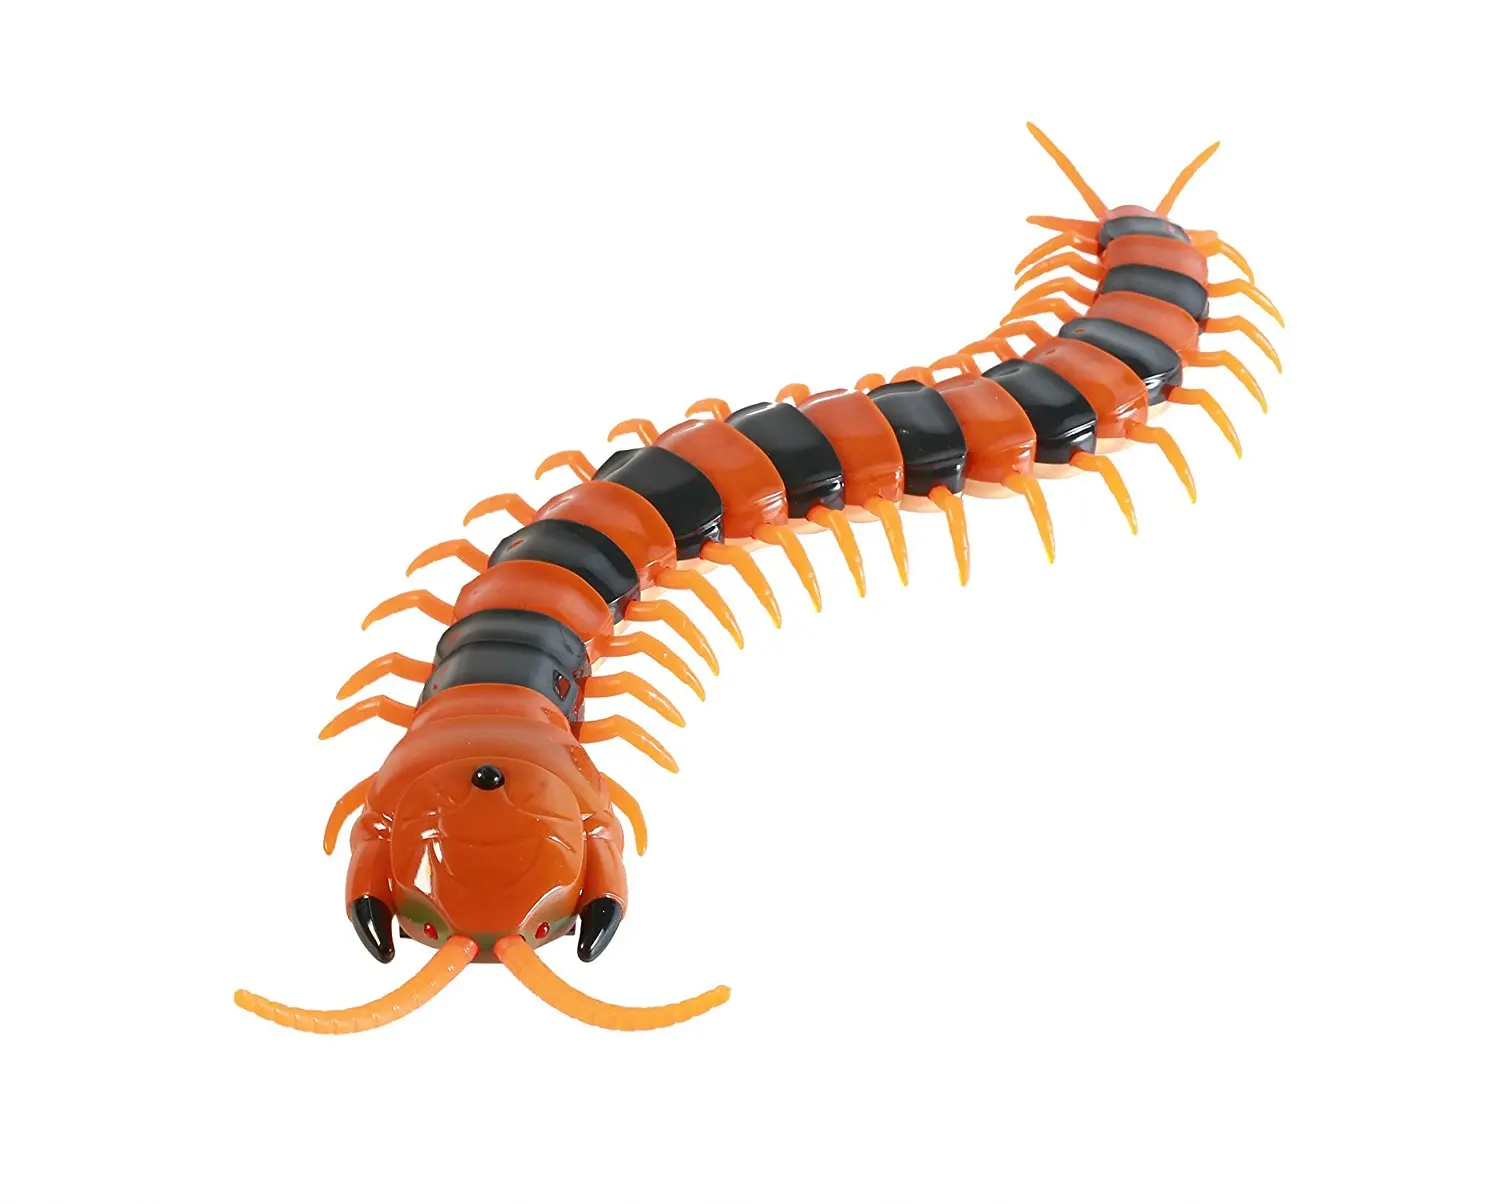 Iluminação infravermelha mini rc centipede simulative controle